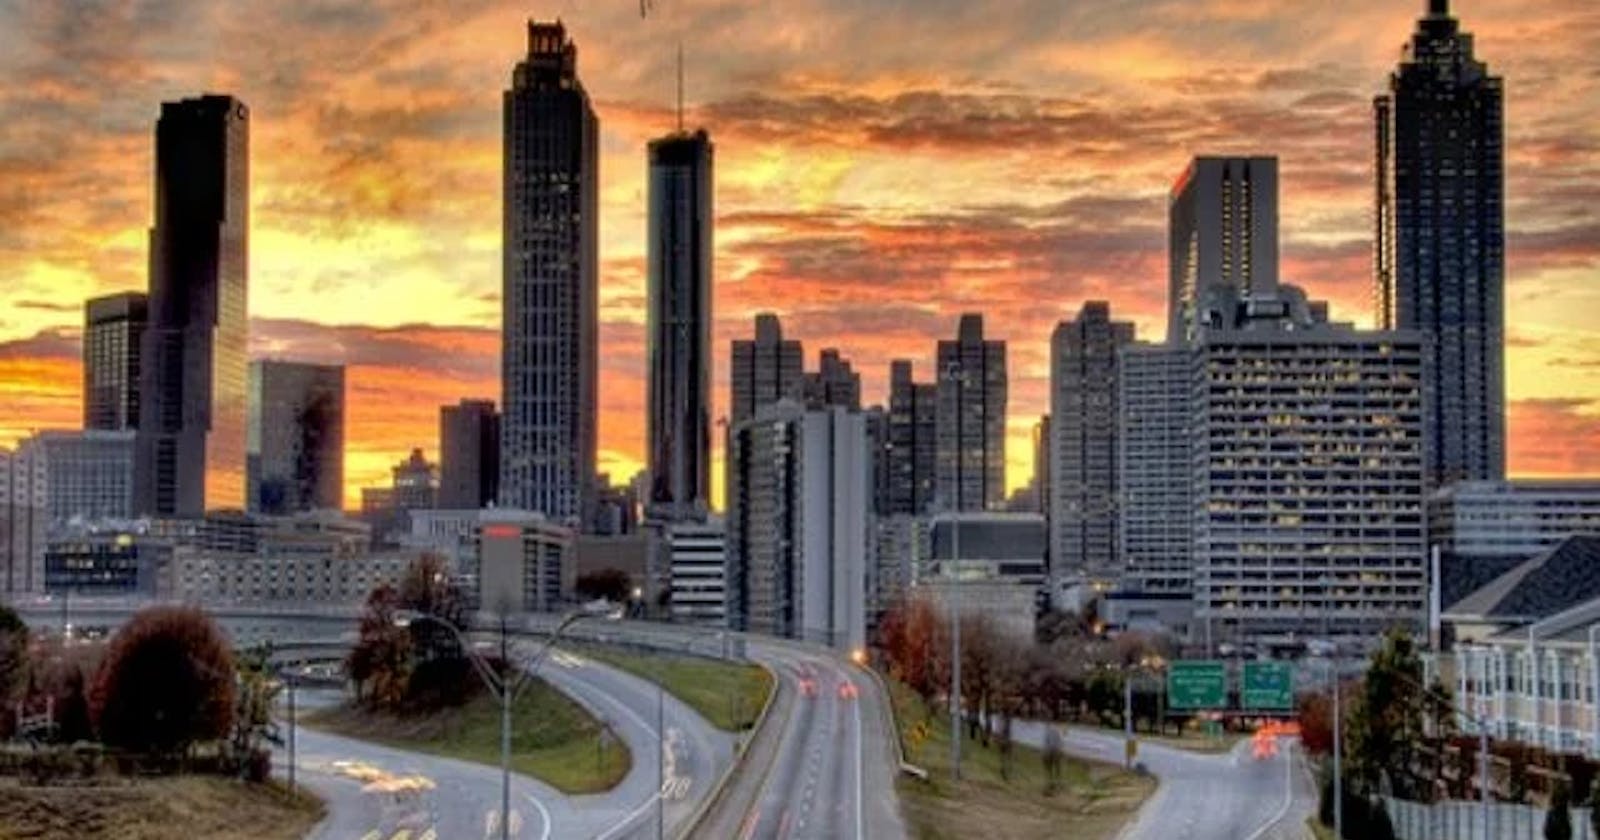 Atlanta's City Top Nightlife Attractions